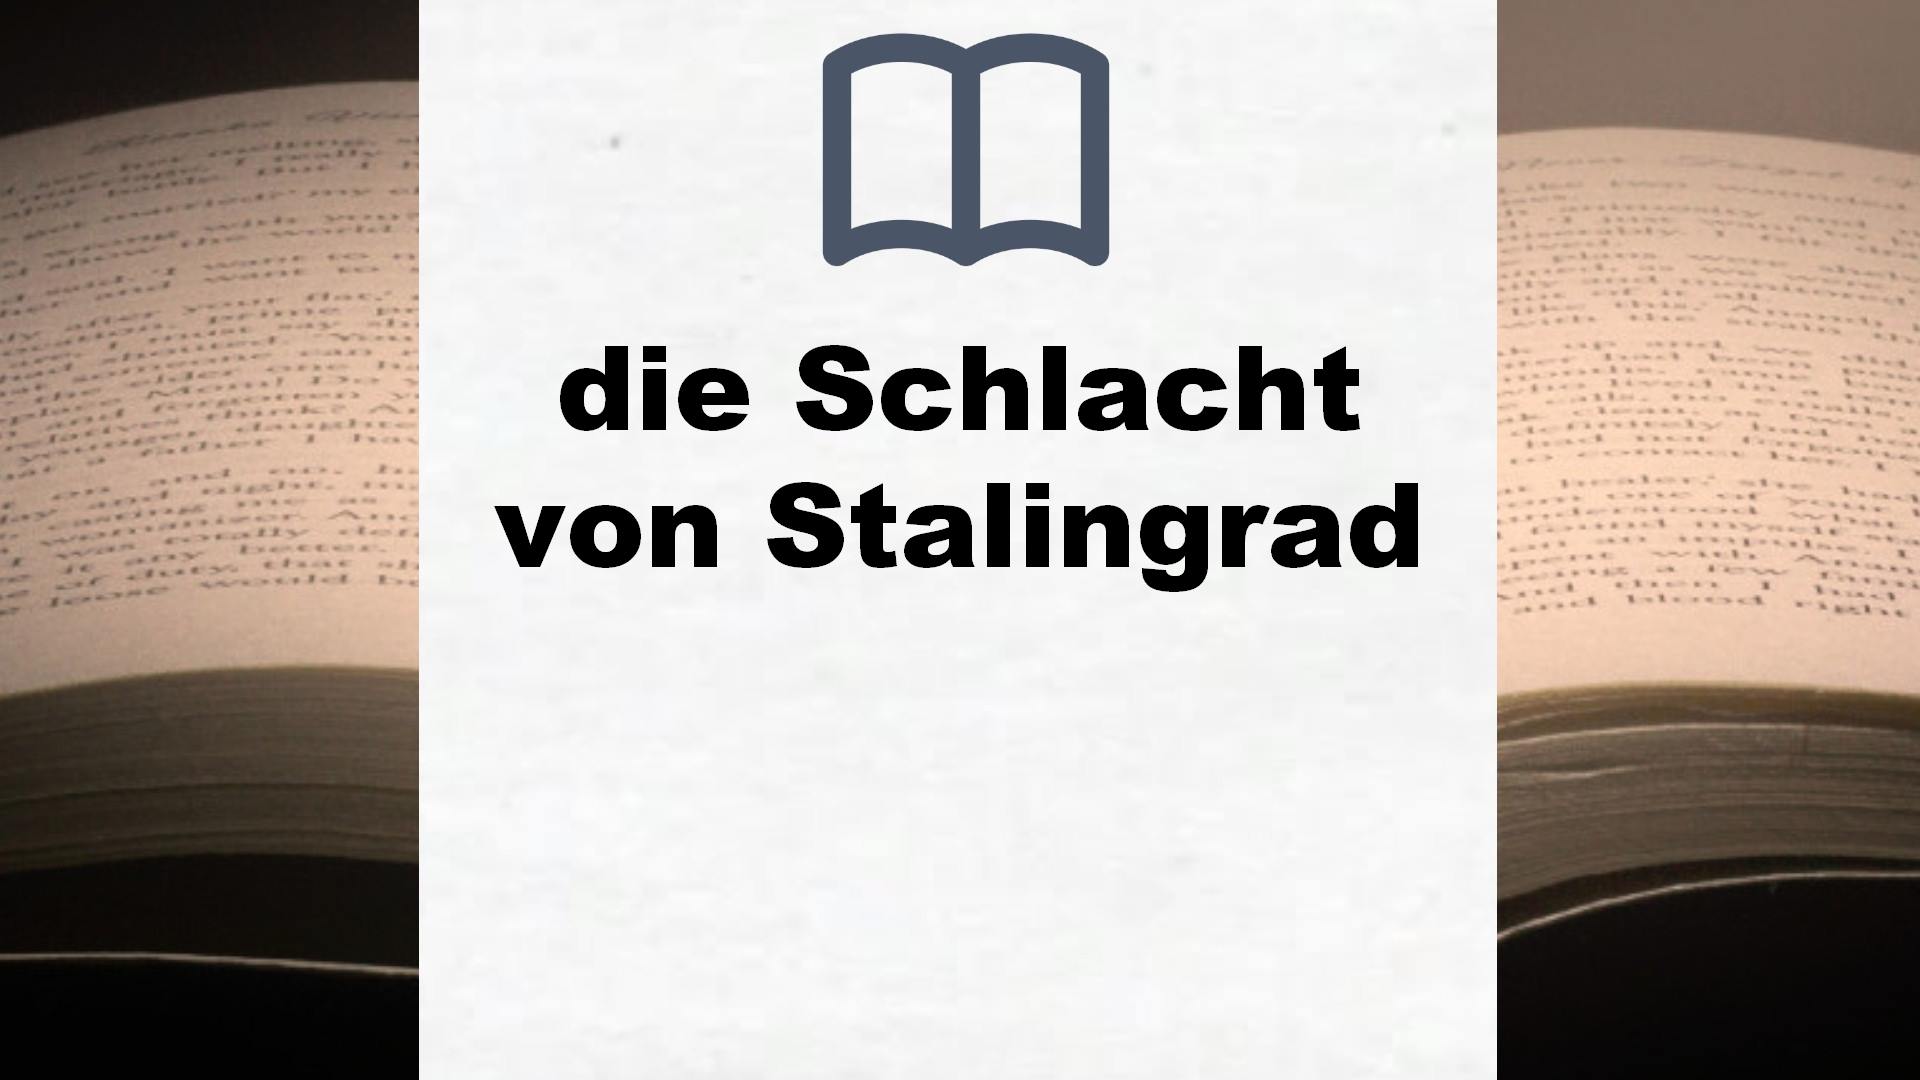 Bücher über die Schlacht von Stalingrad